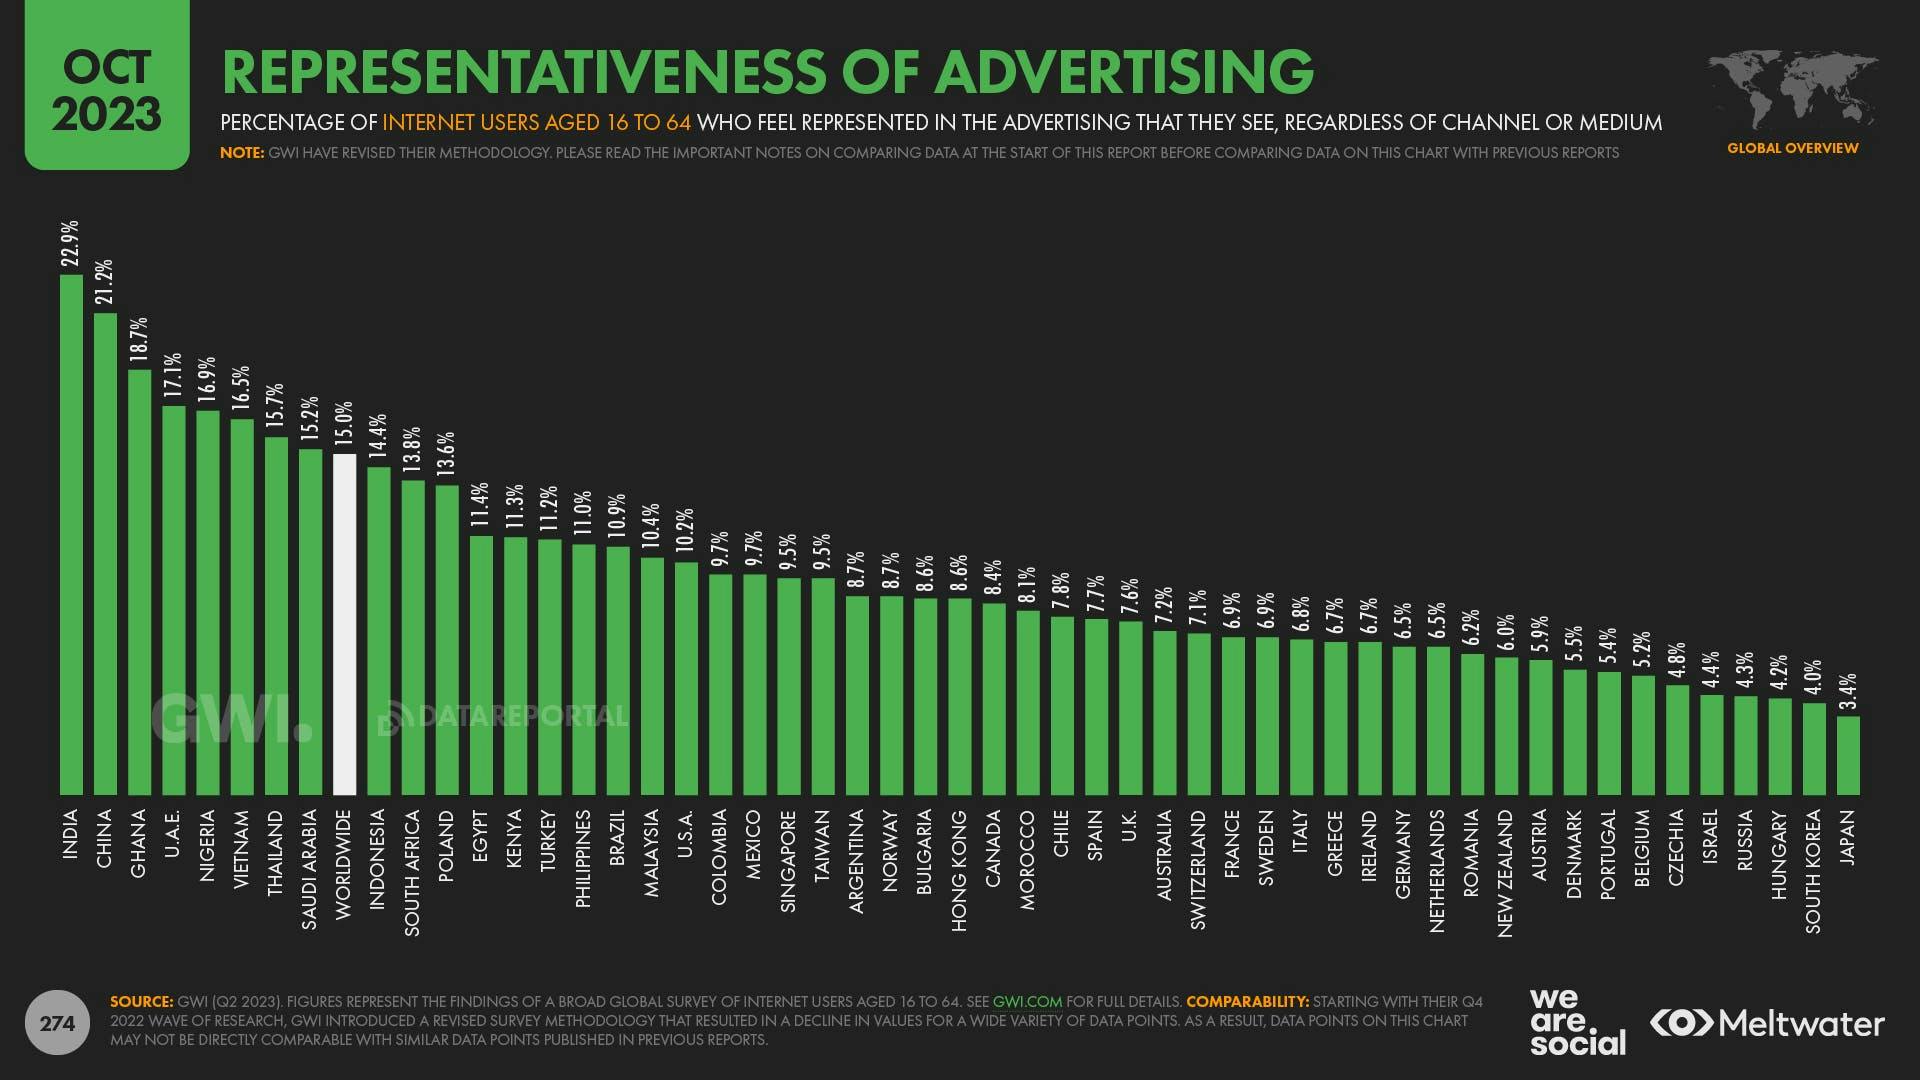 October 2023 Global Digital Report: Representativeness of advertising